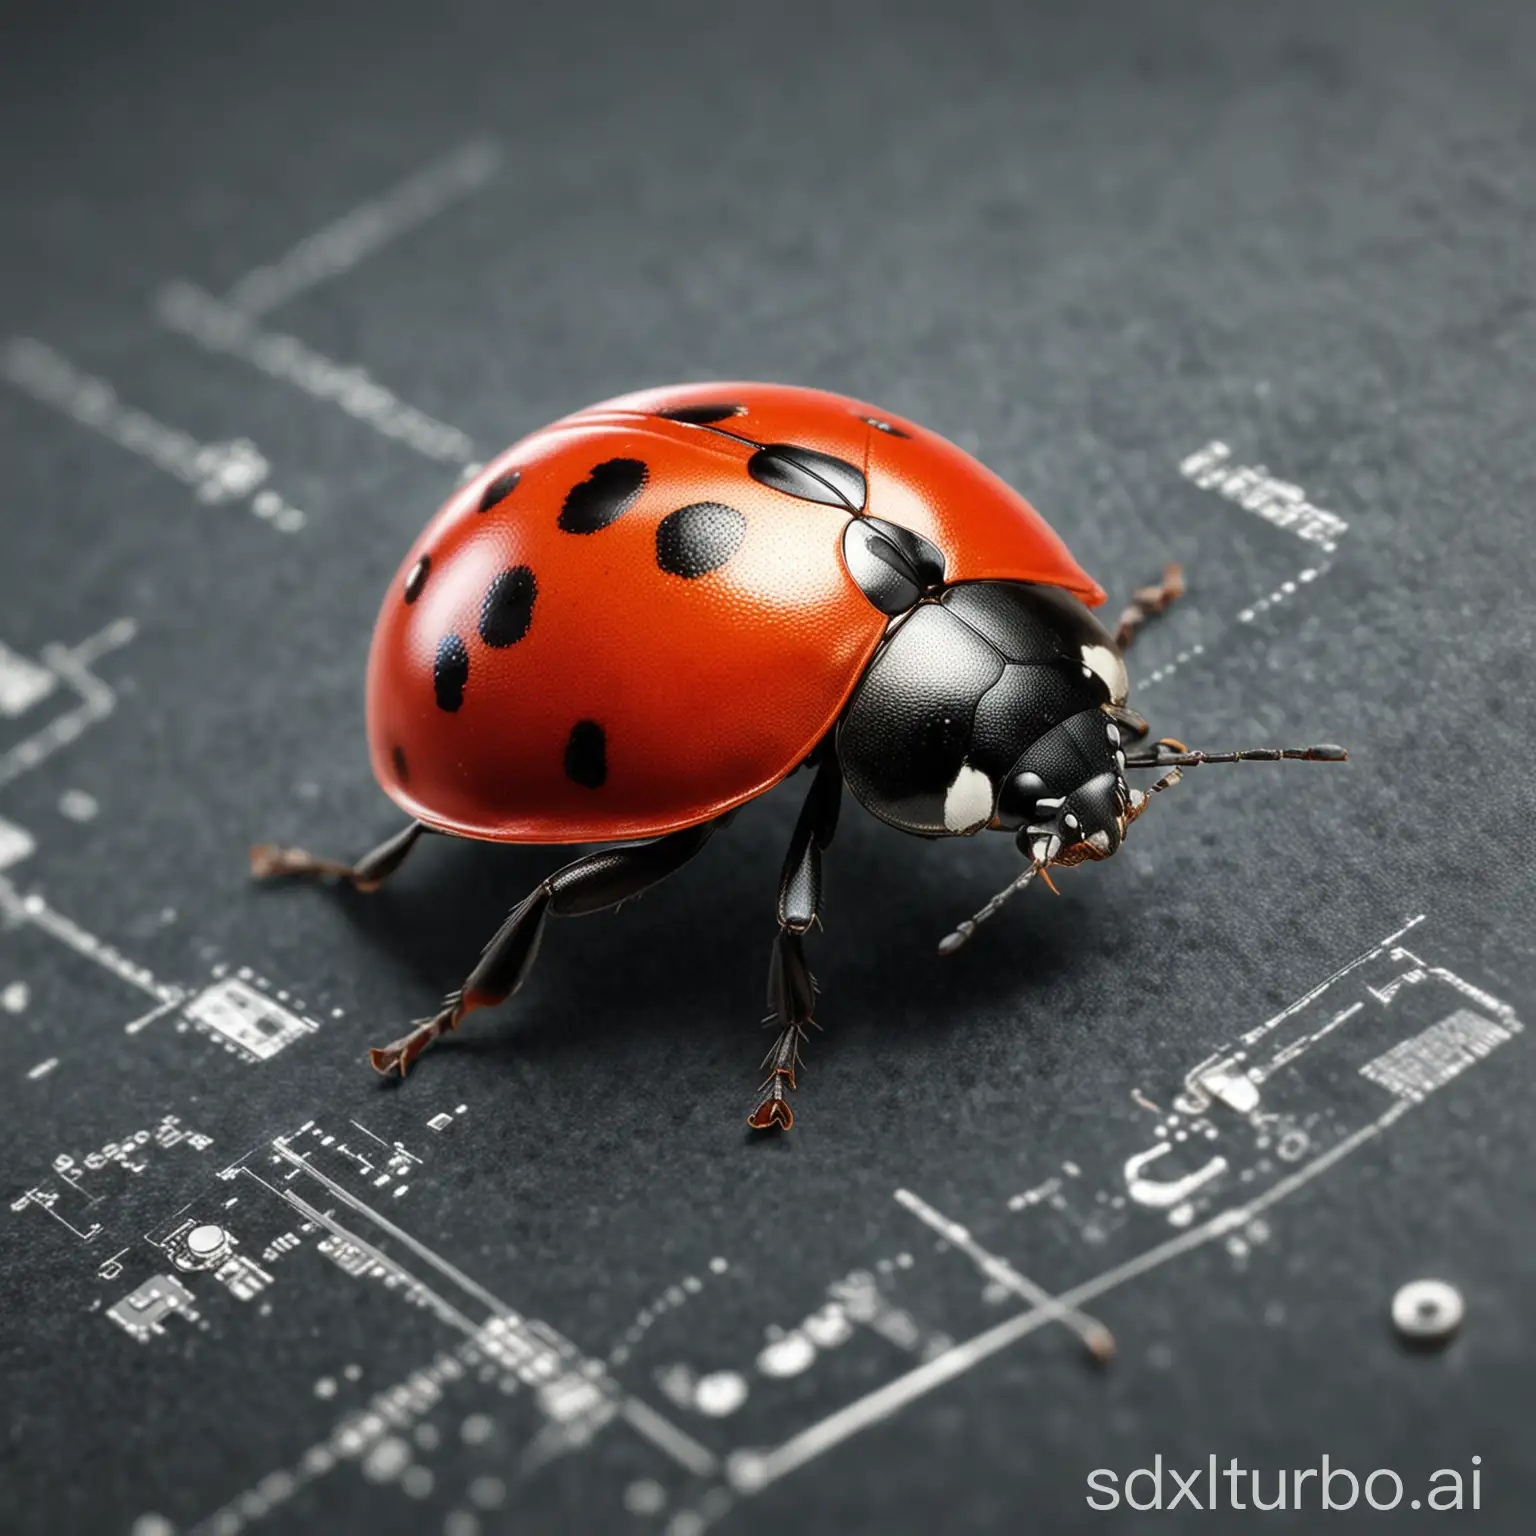 A ladybug full of technology